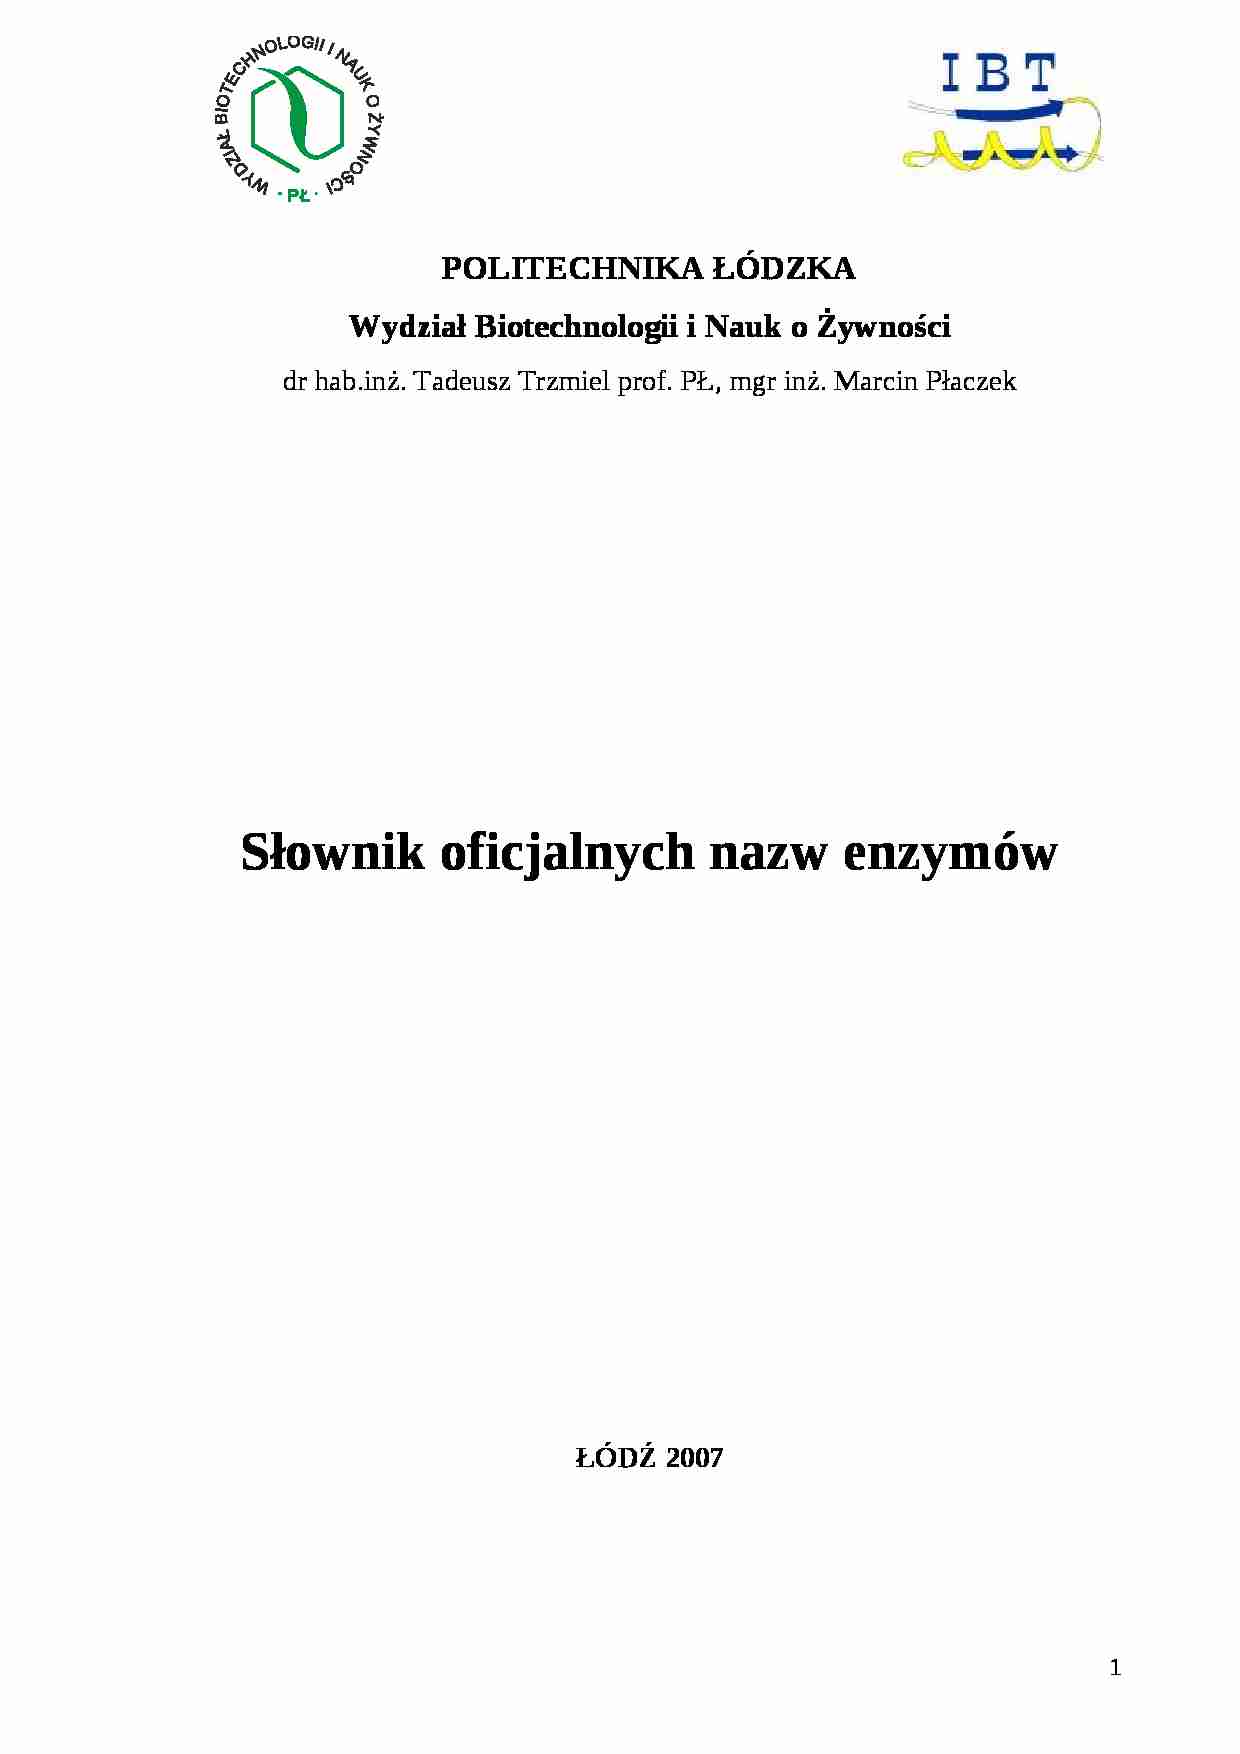 Polski Slownik Enzymow - strona 1